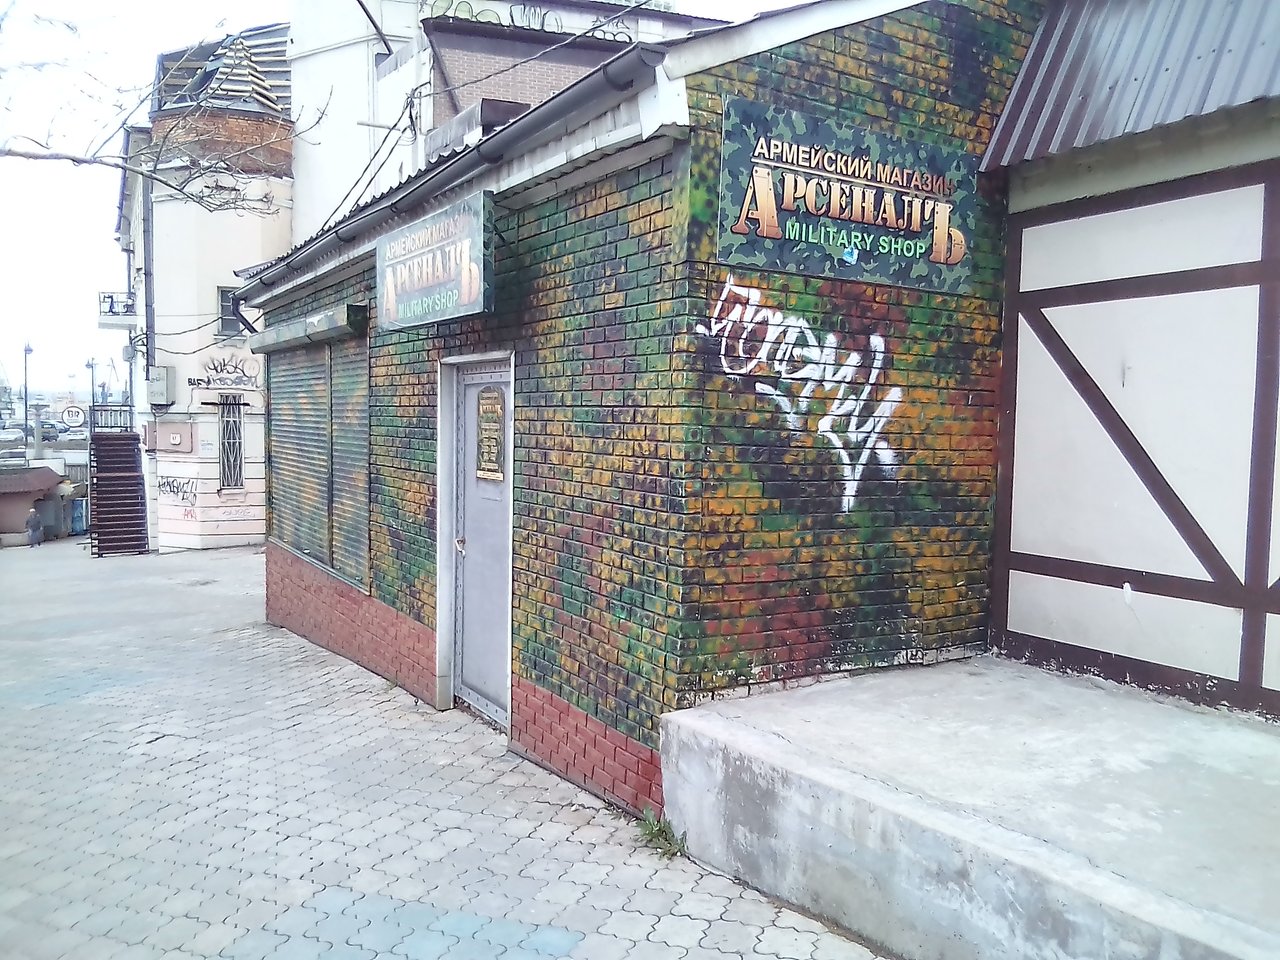 Армейский магазин «АрсеналЪ» на Адмирала Фокина во Владивостоке